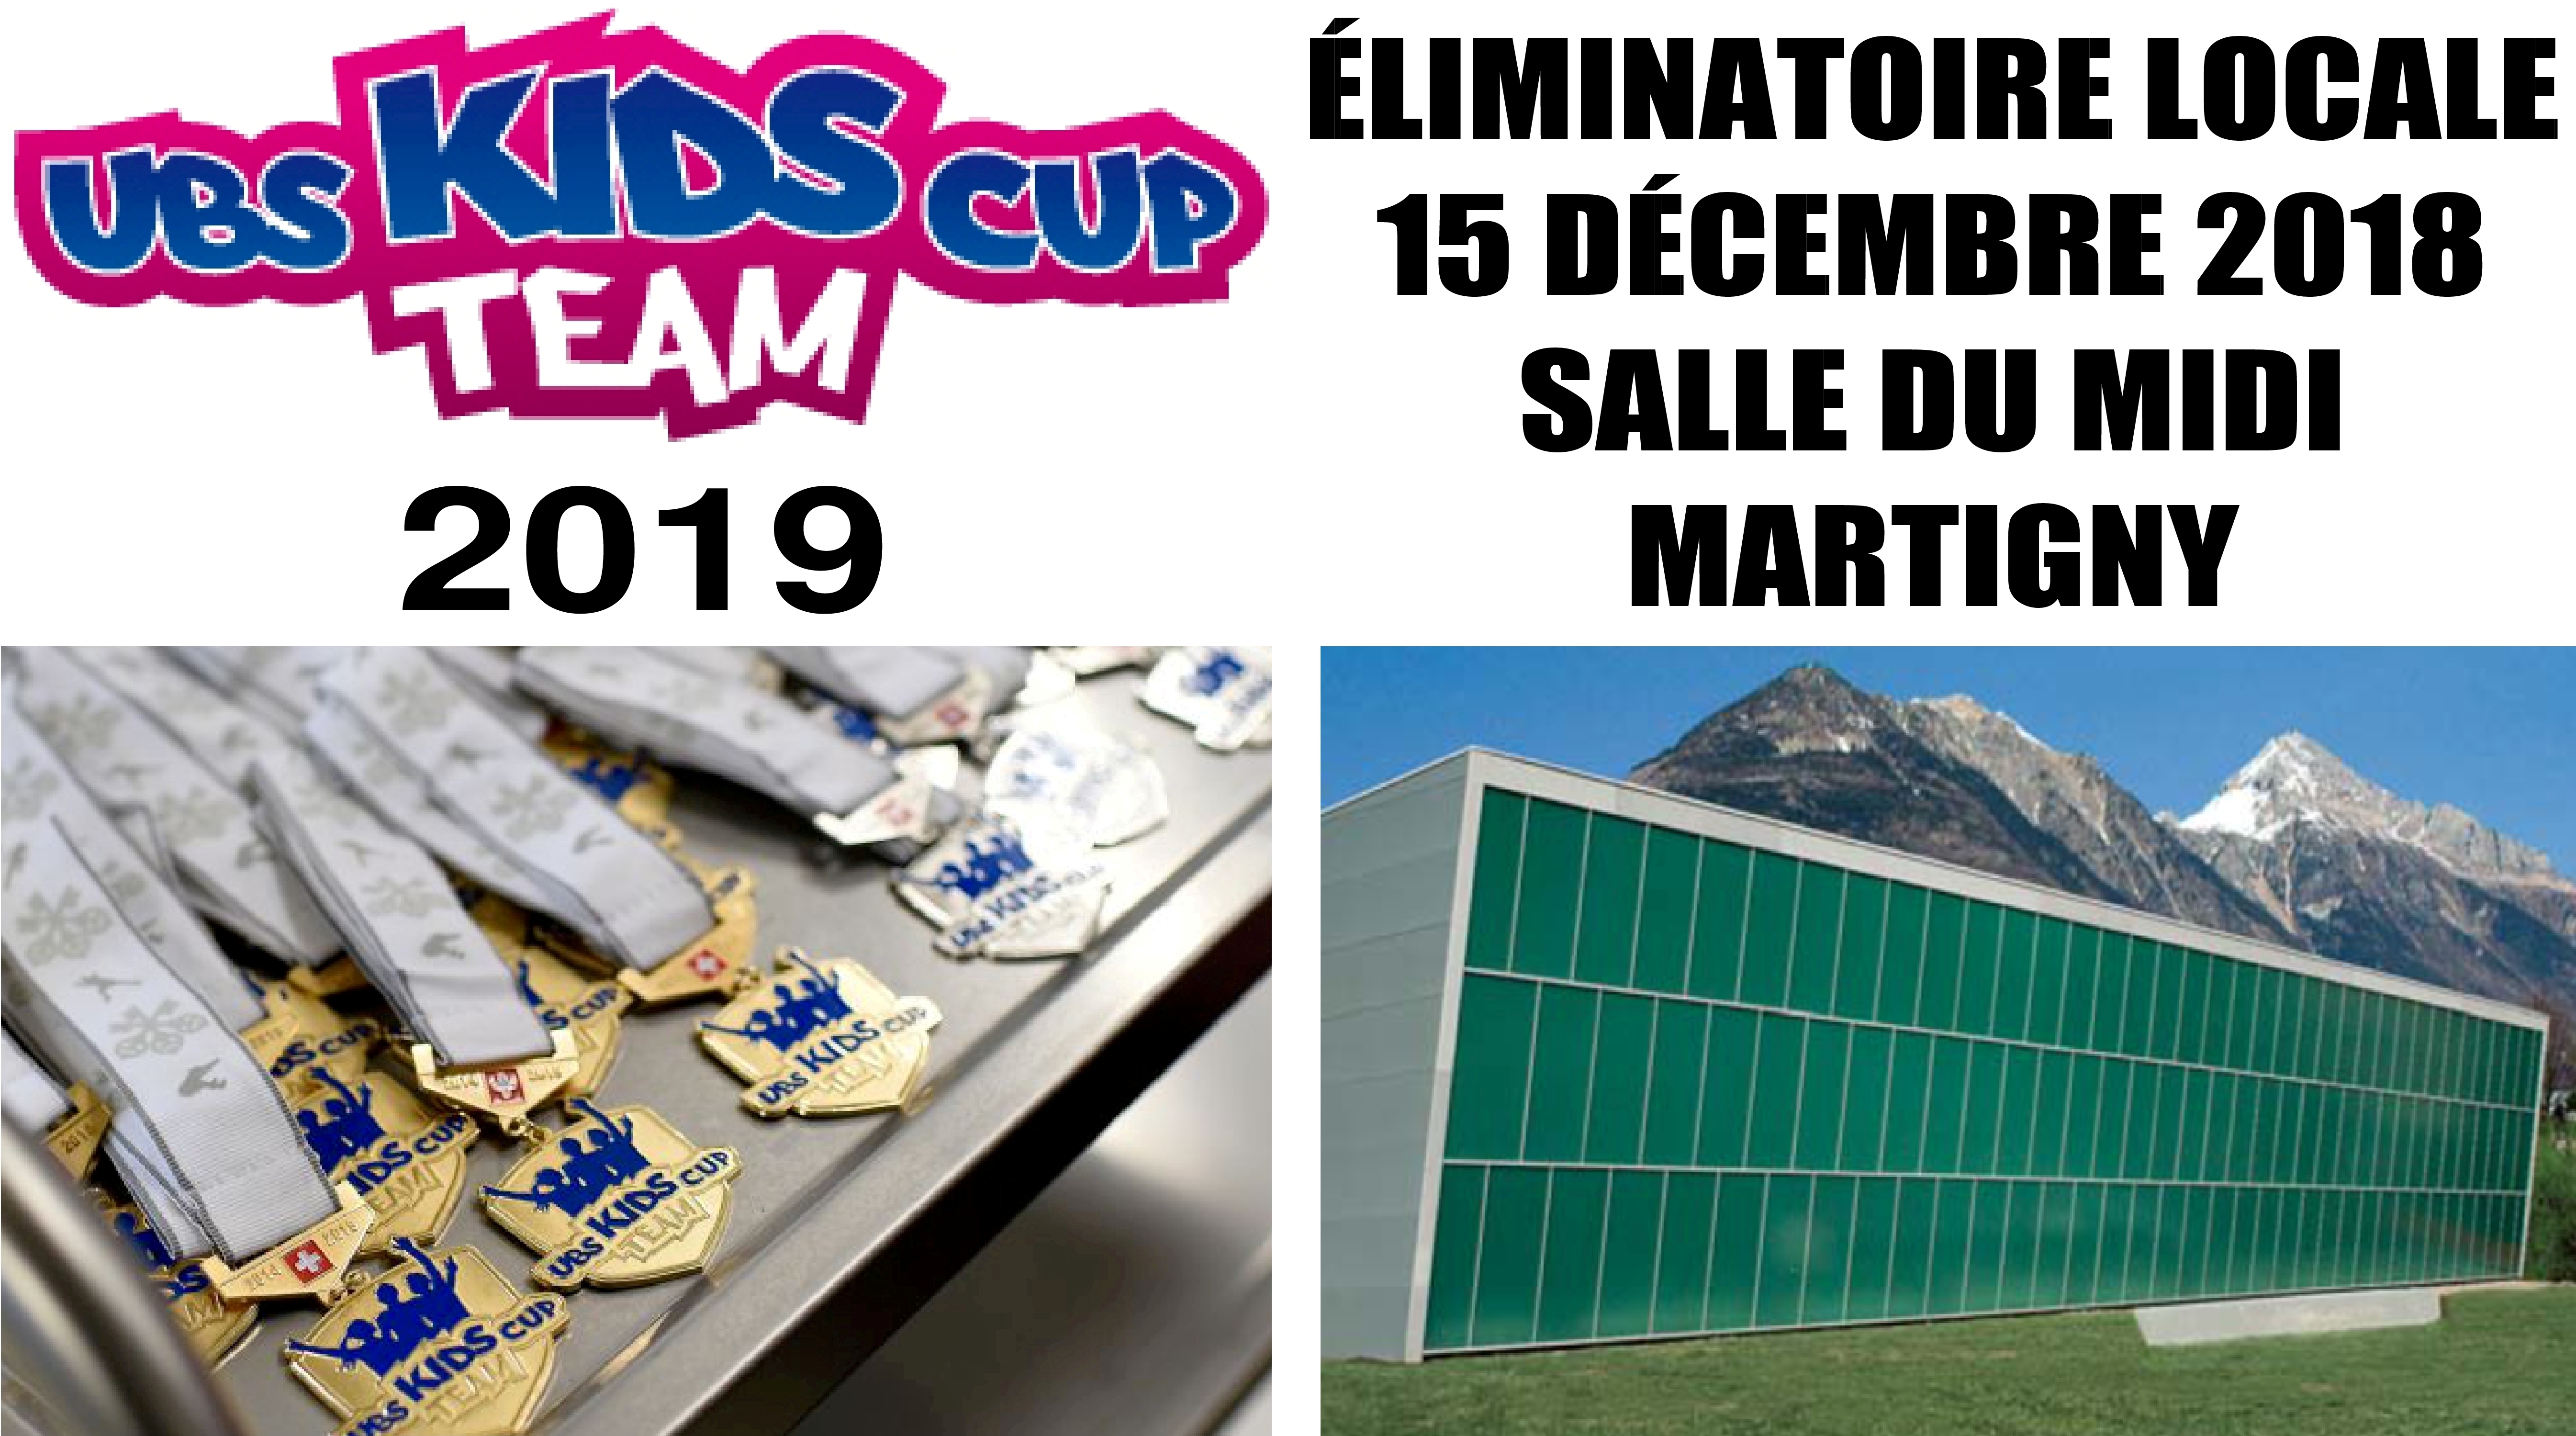 Eliminatoire UBS Kids Cup Team à Martigny